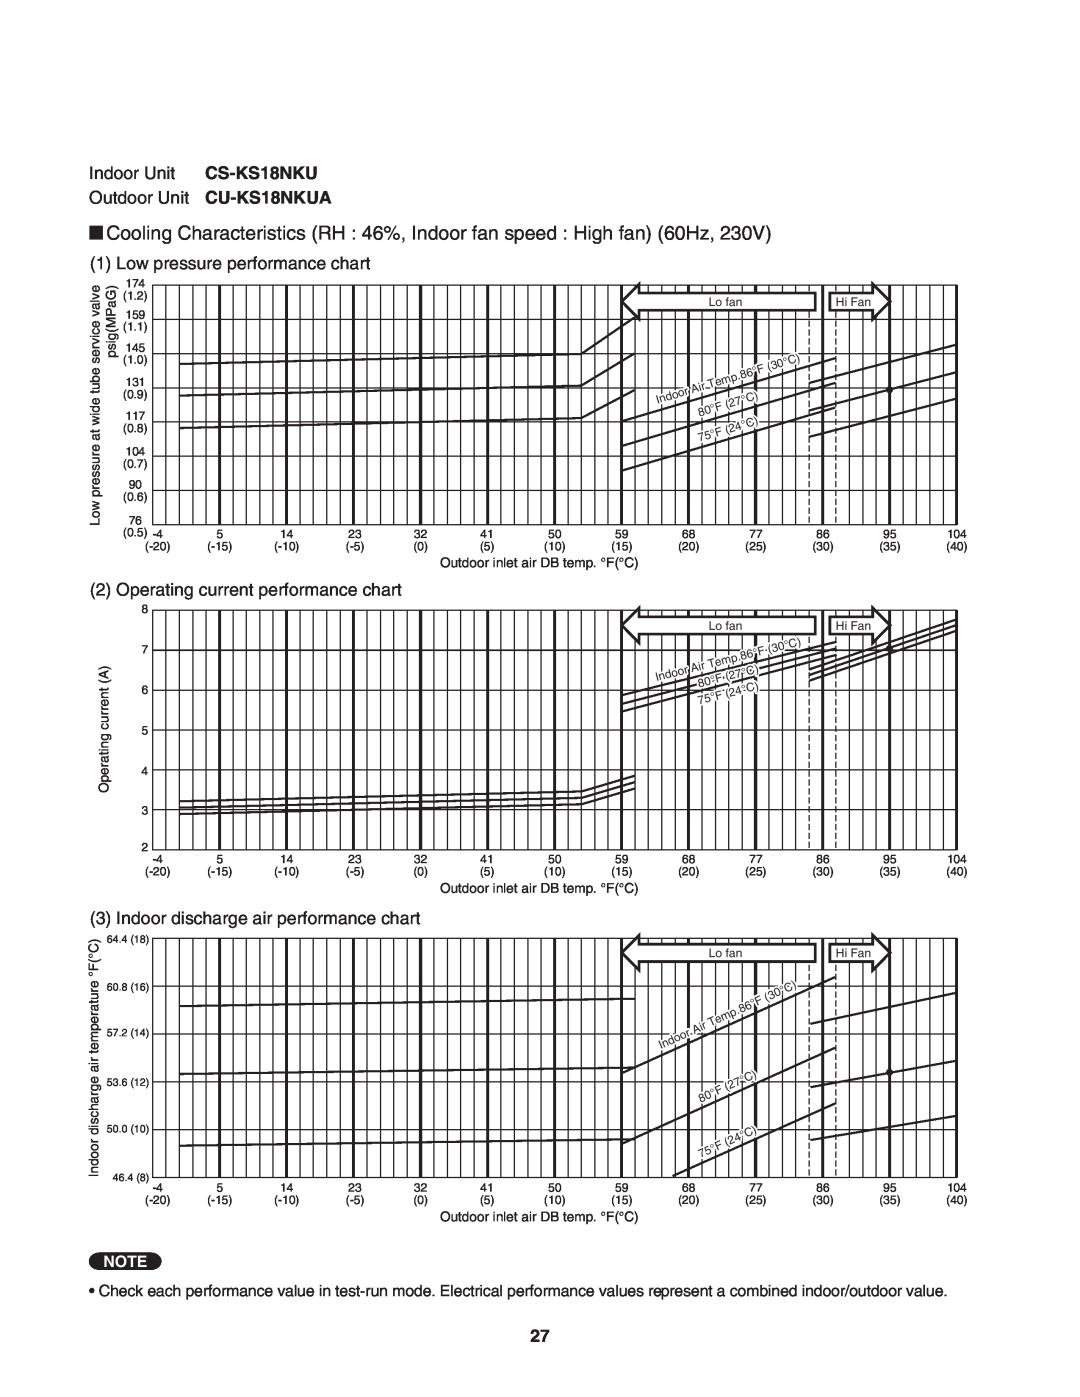 Panasonic service manual Indoor Unit CS-KS18NKU Outdoor Unit CU-KS18NKUA, Low pressure performance chart 